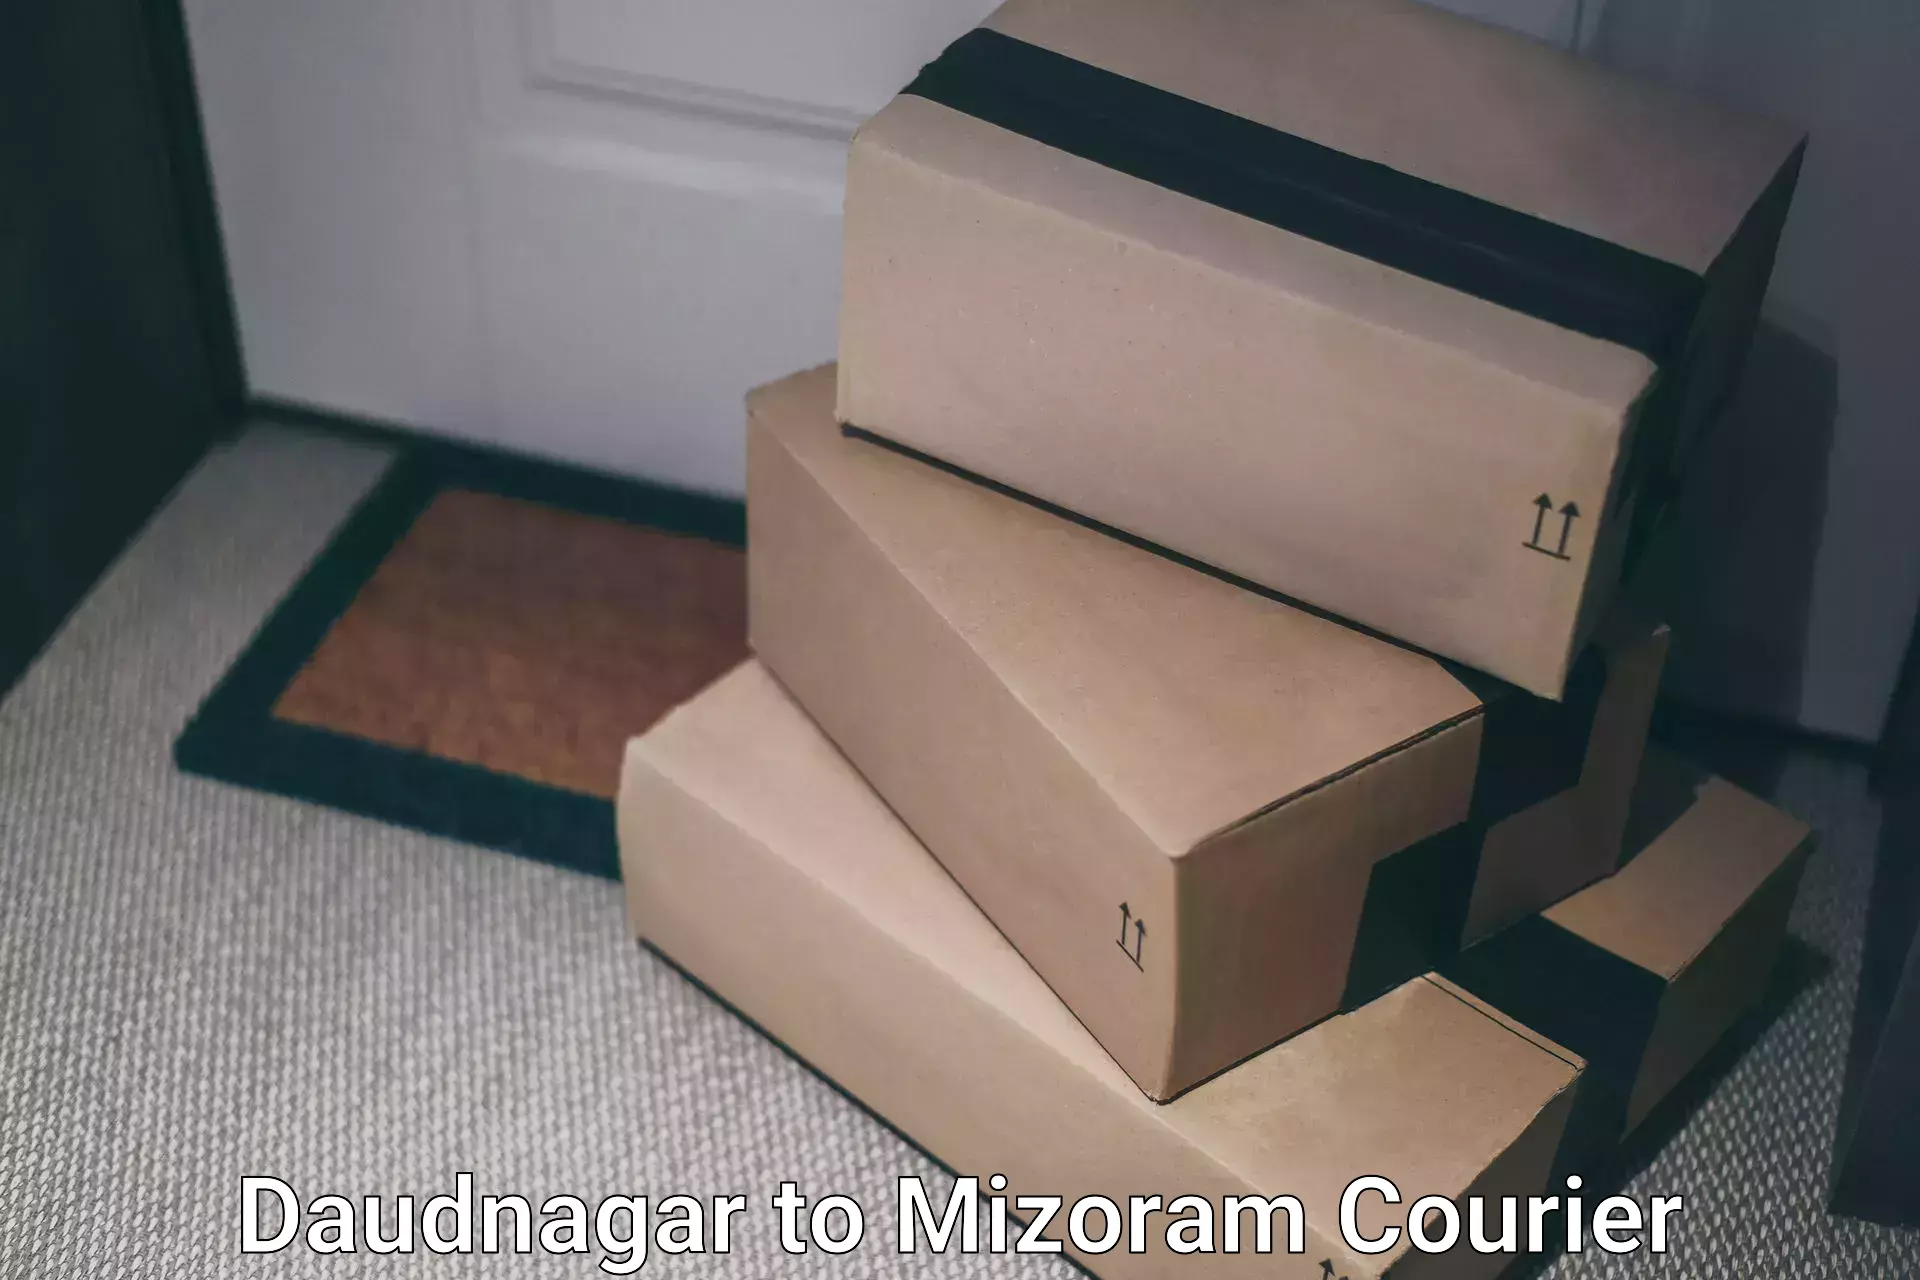 International courier rates Daudnagar to Mizoram